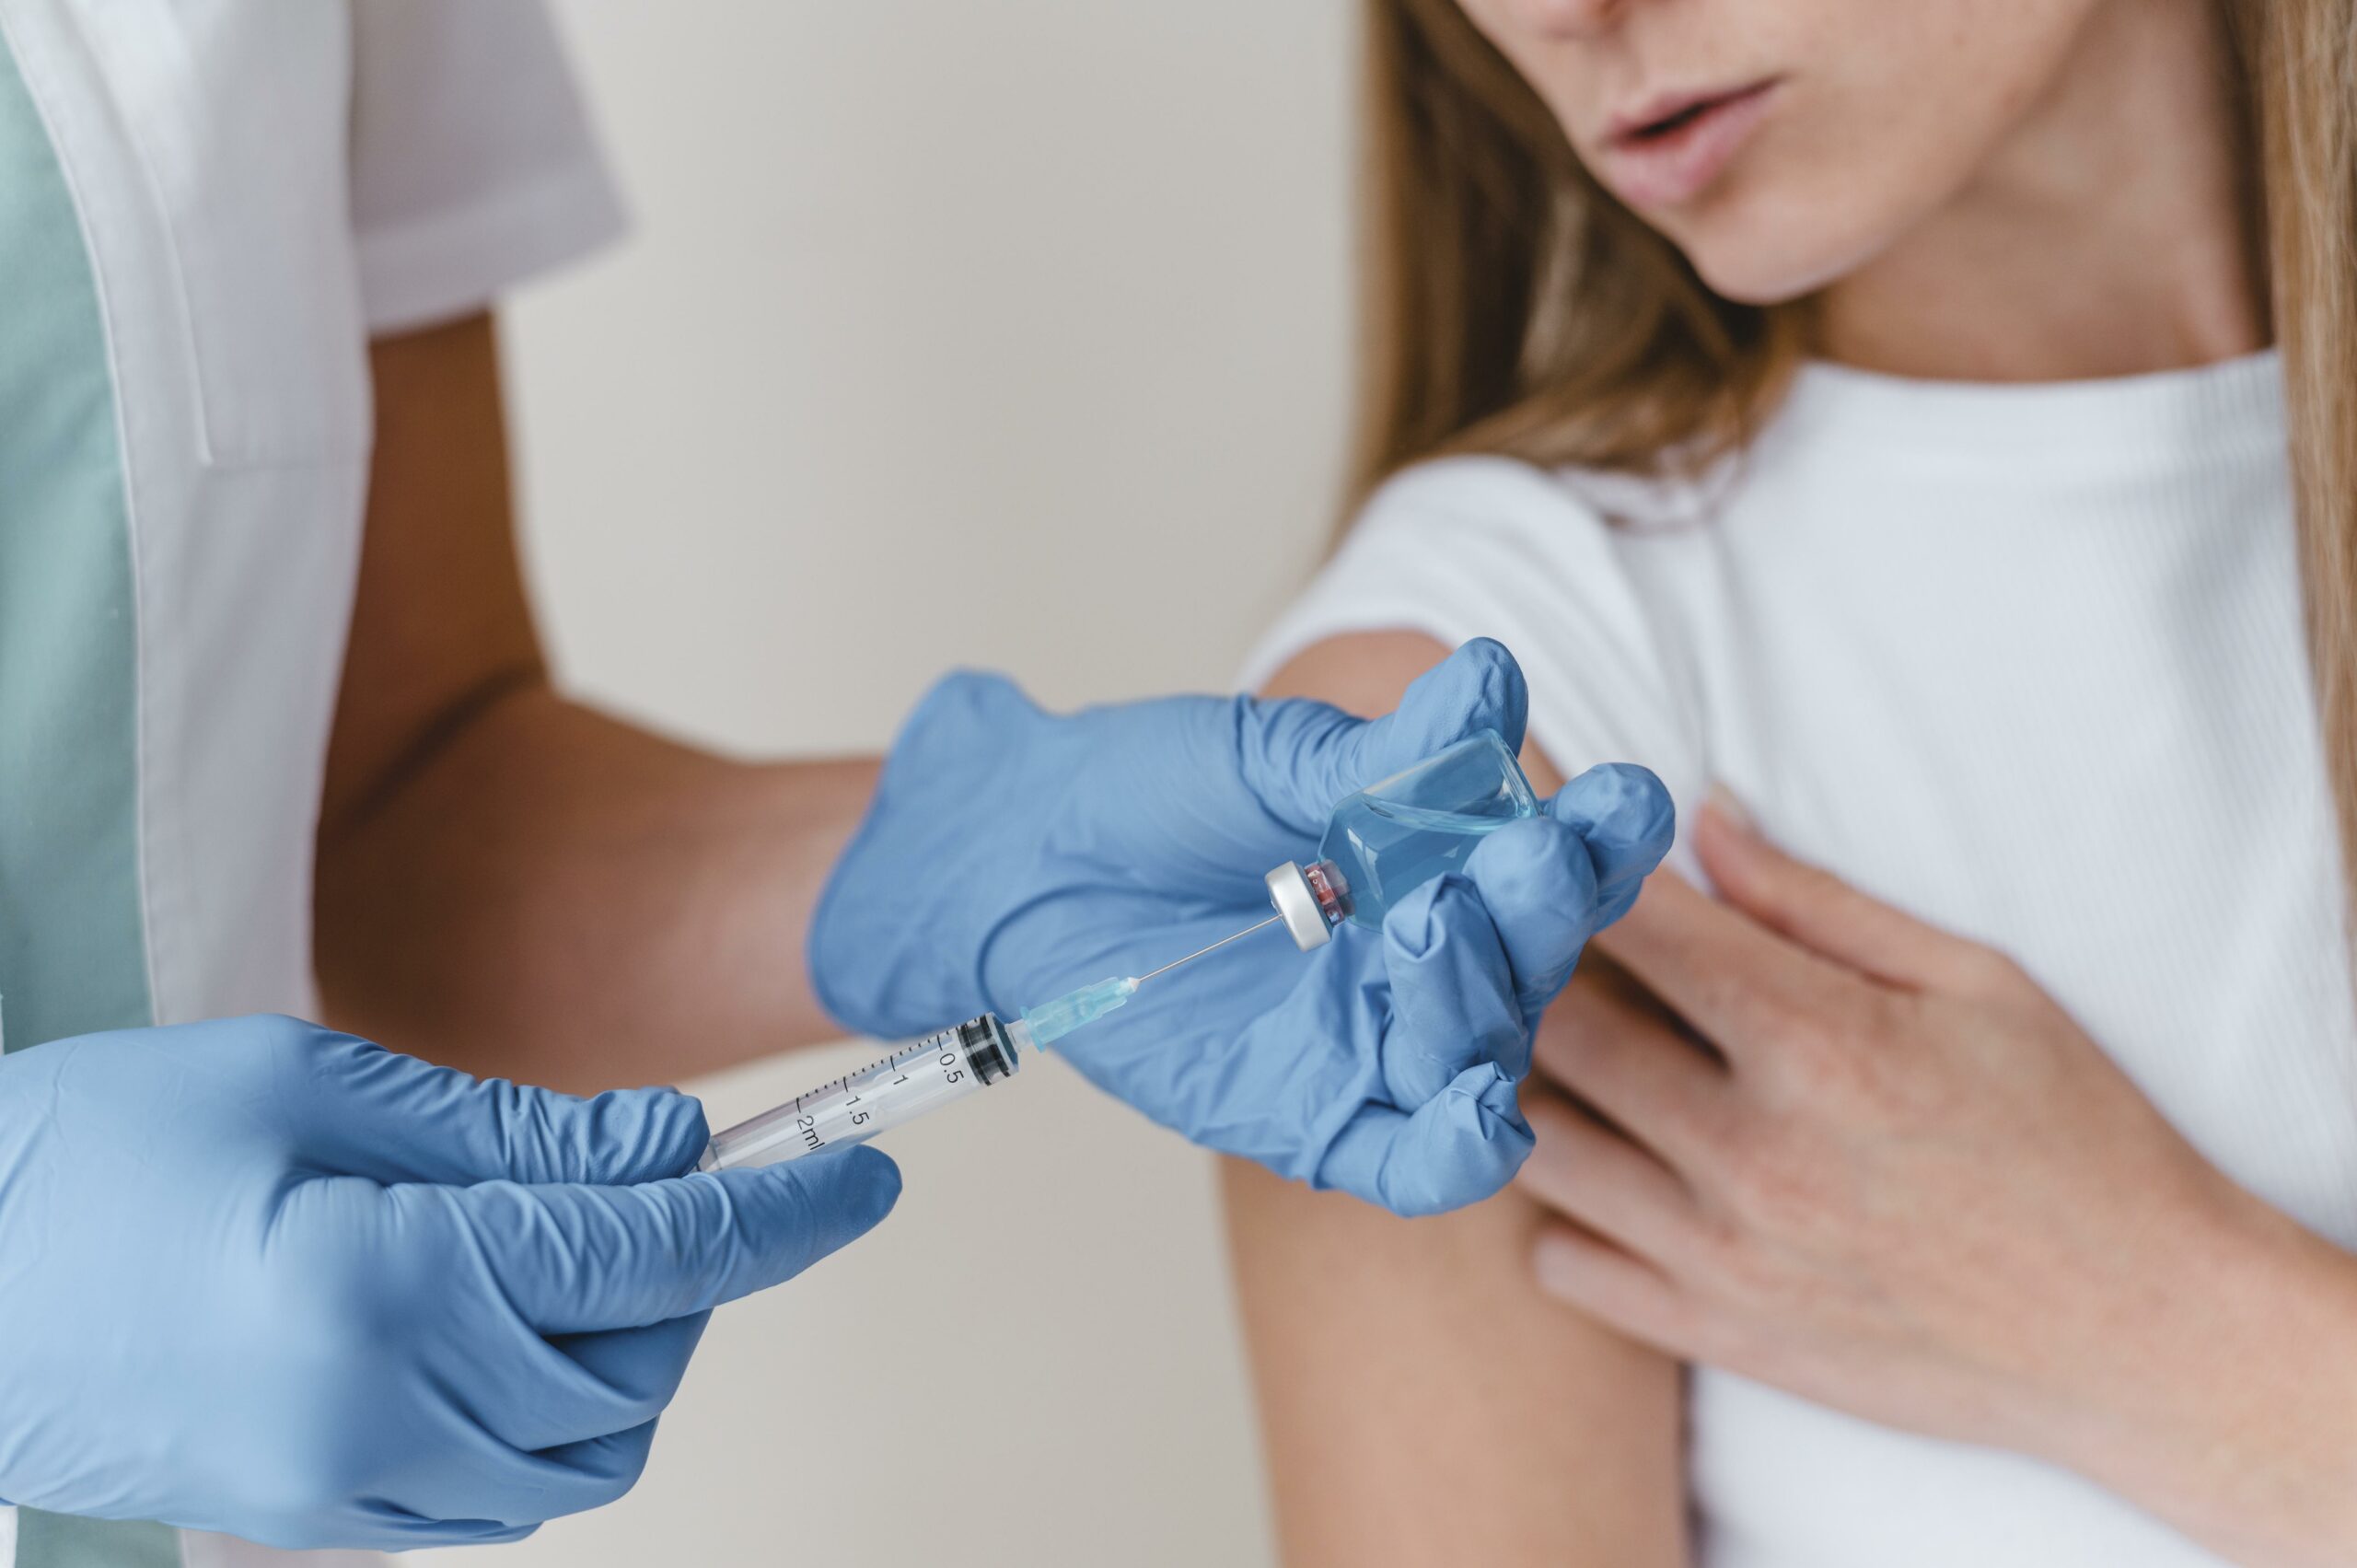 Люди, привитые вакцинами, чаще умирают от COVID-19